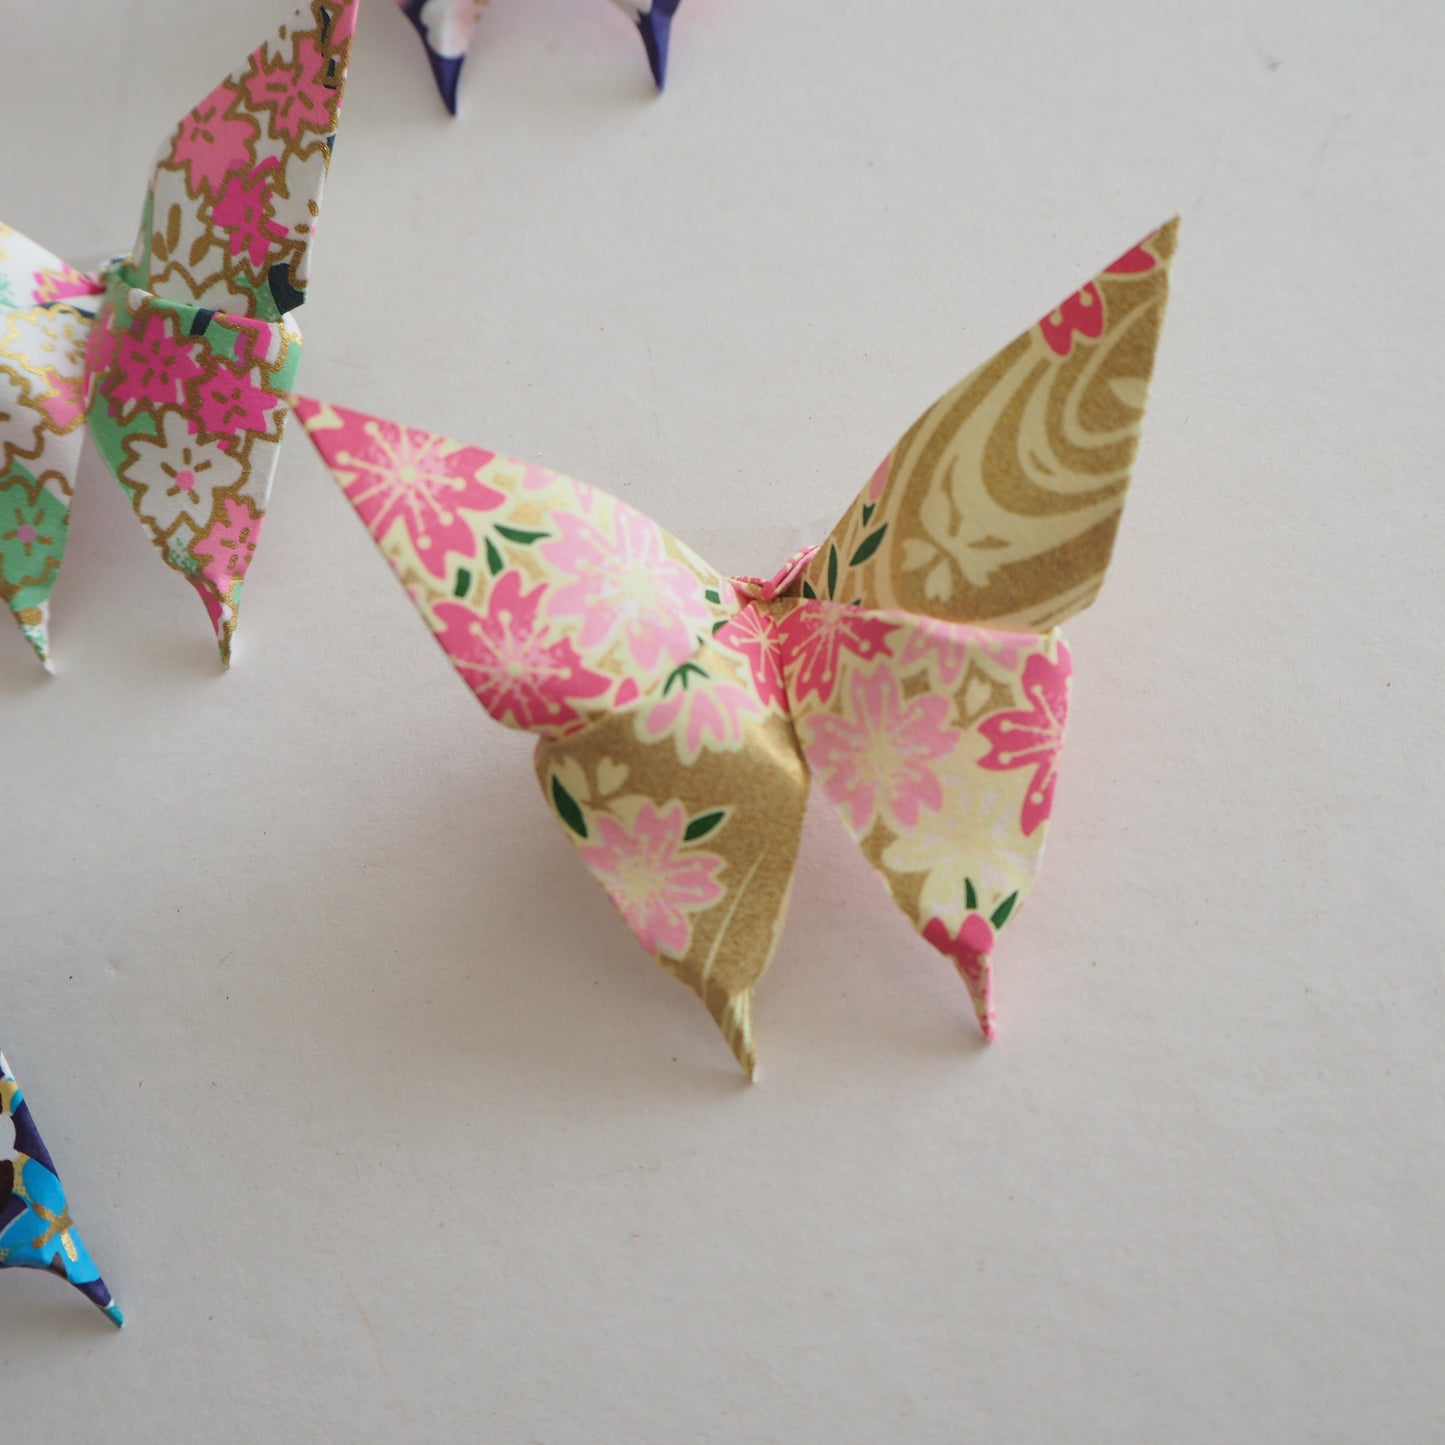 Pack of 10 Summer Flower Garden Yuzen Washi Origami Paper Butterflies - Small